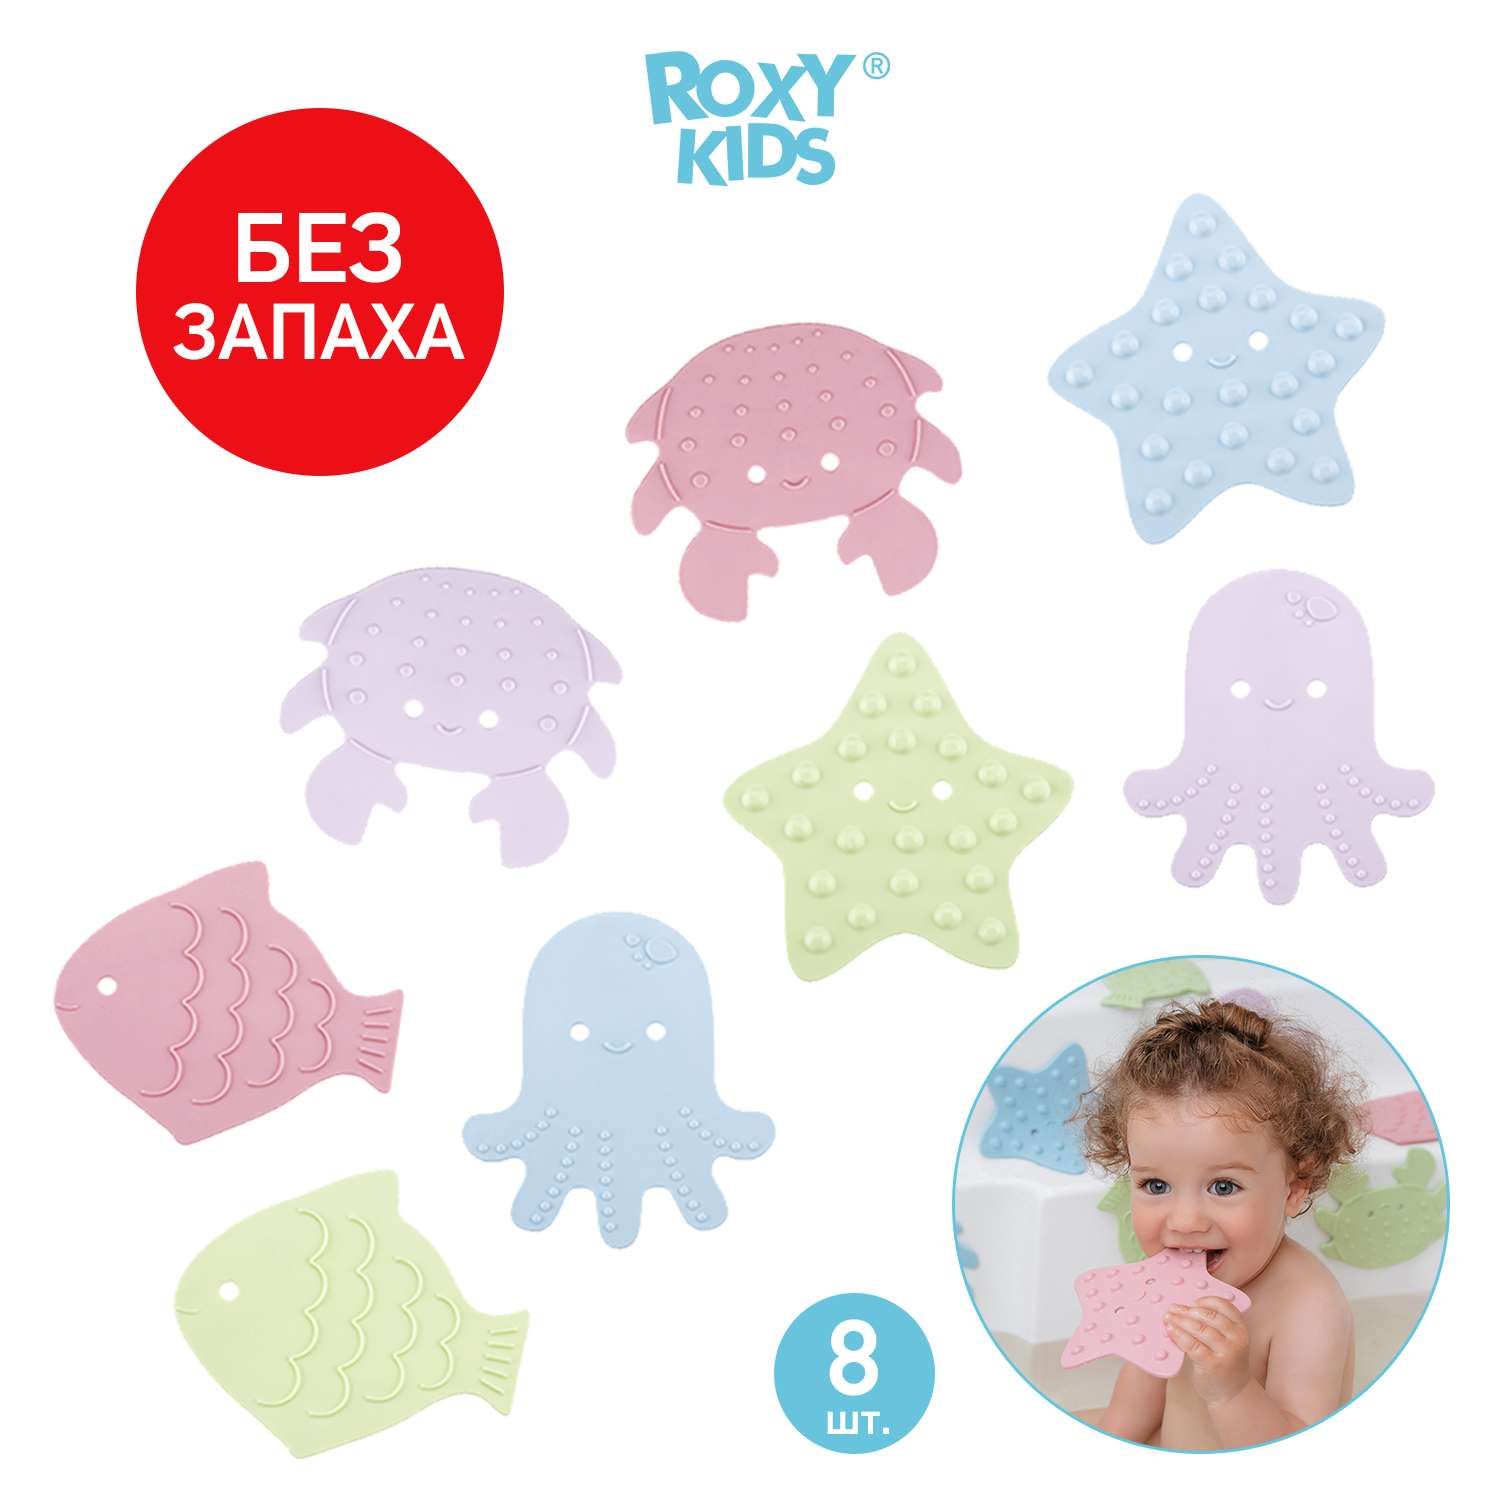 Мини-коврики детские ROXY-KIDS для ванной противоскользящие Sea animals 8 шт цвета в ассортименте - фото 1